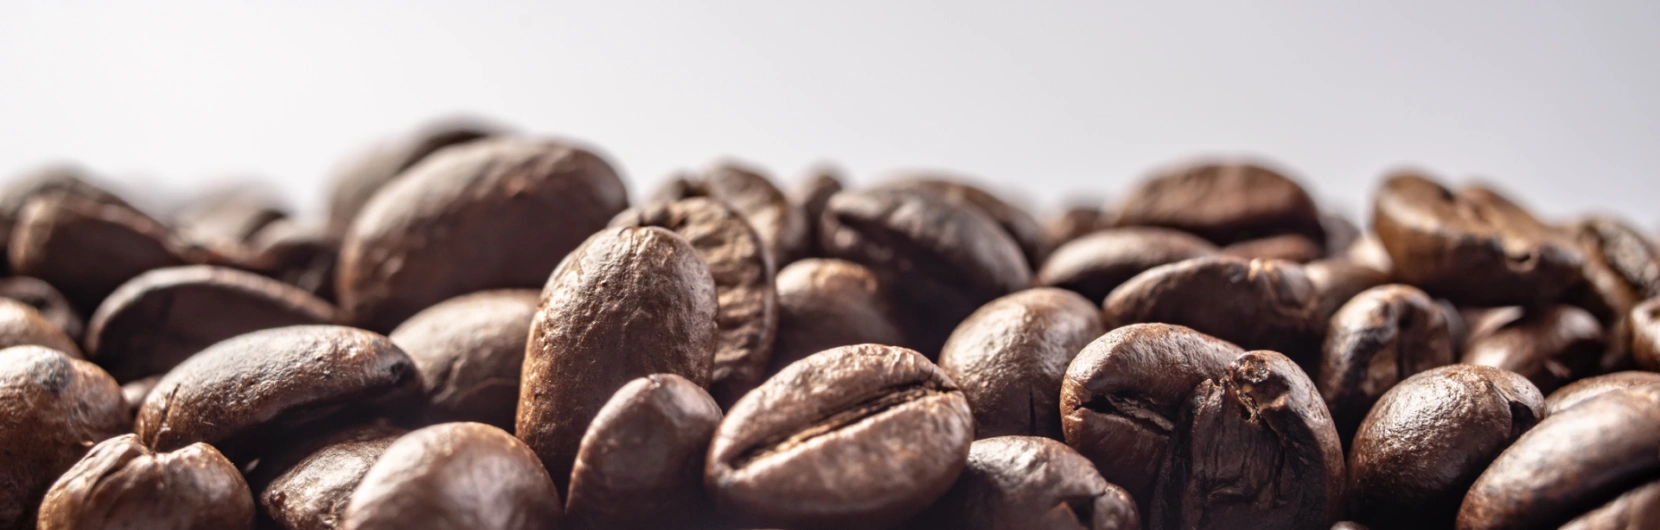 Análise de custo de produção de café: principais indicadores técnicos e econômicos